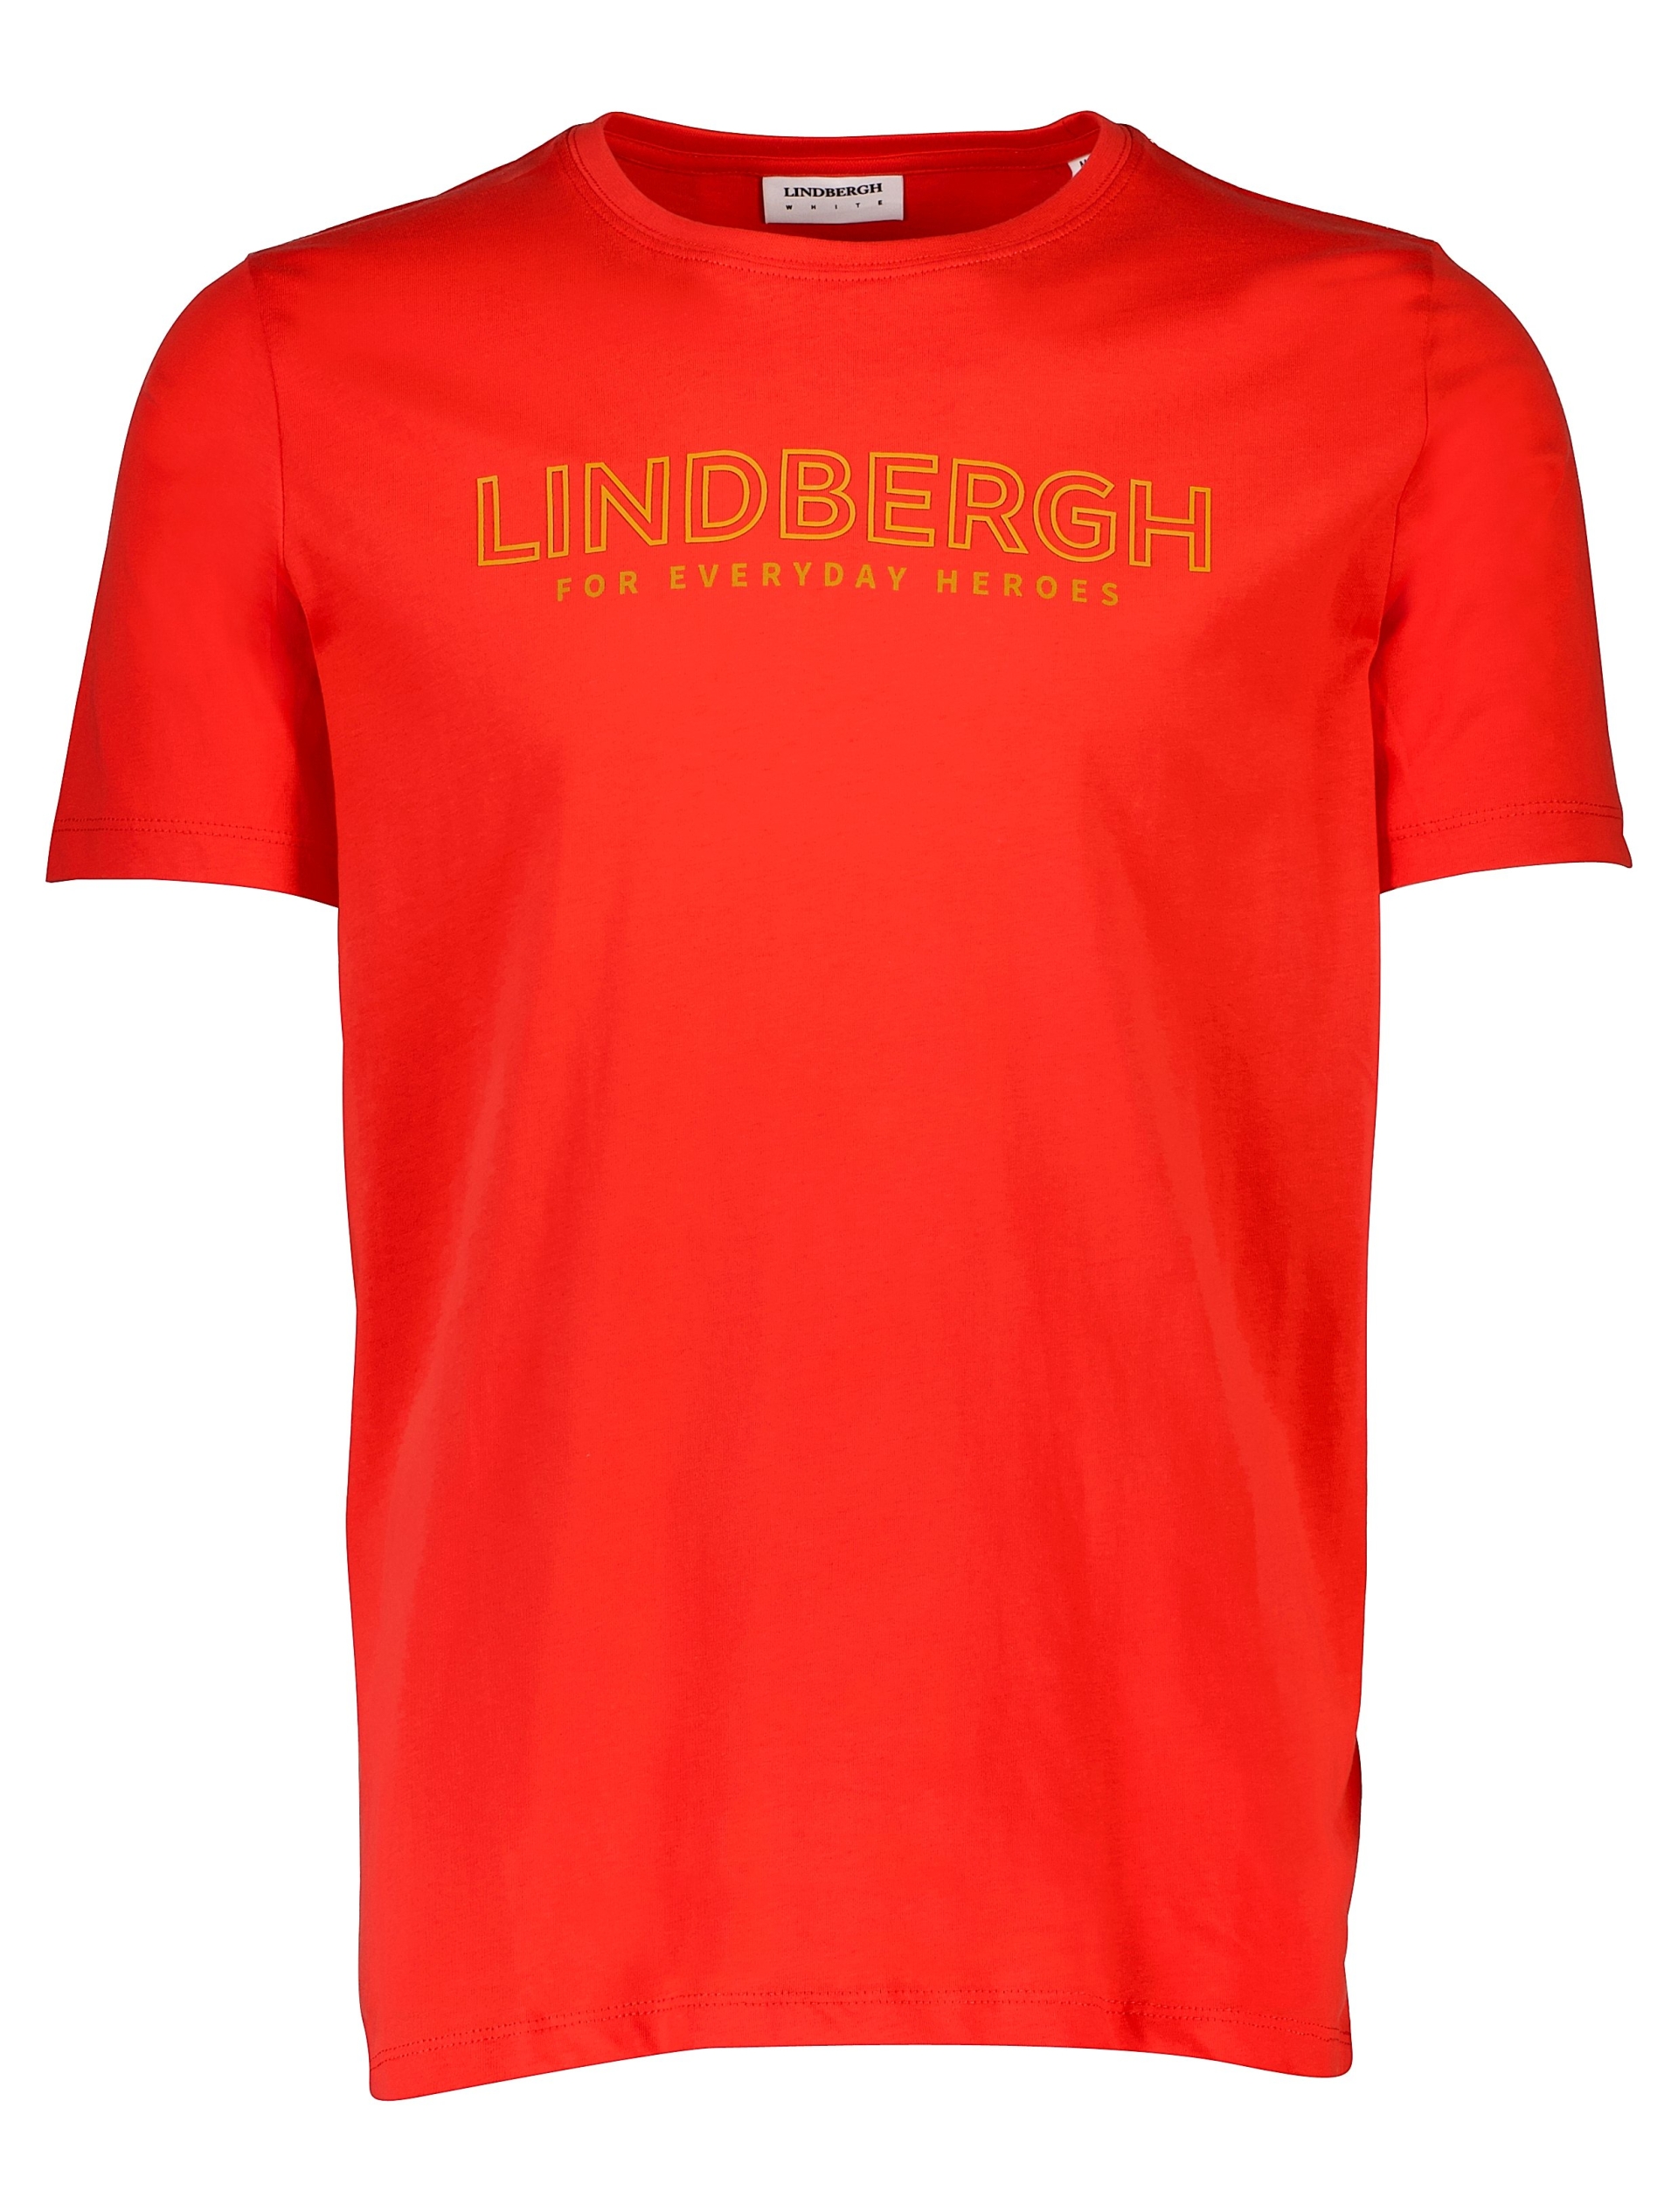 Lindbergh T-shirt röd / coral red